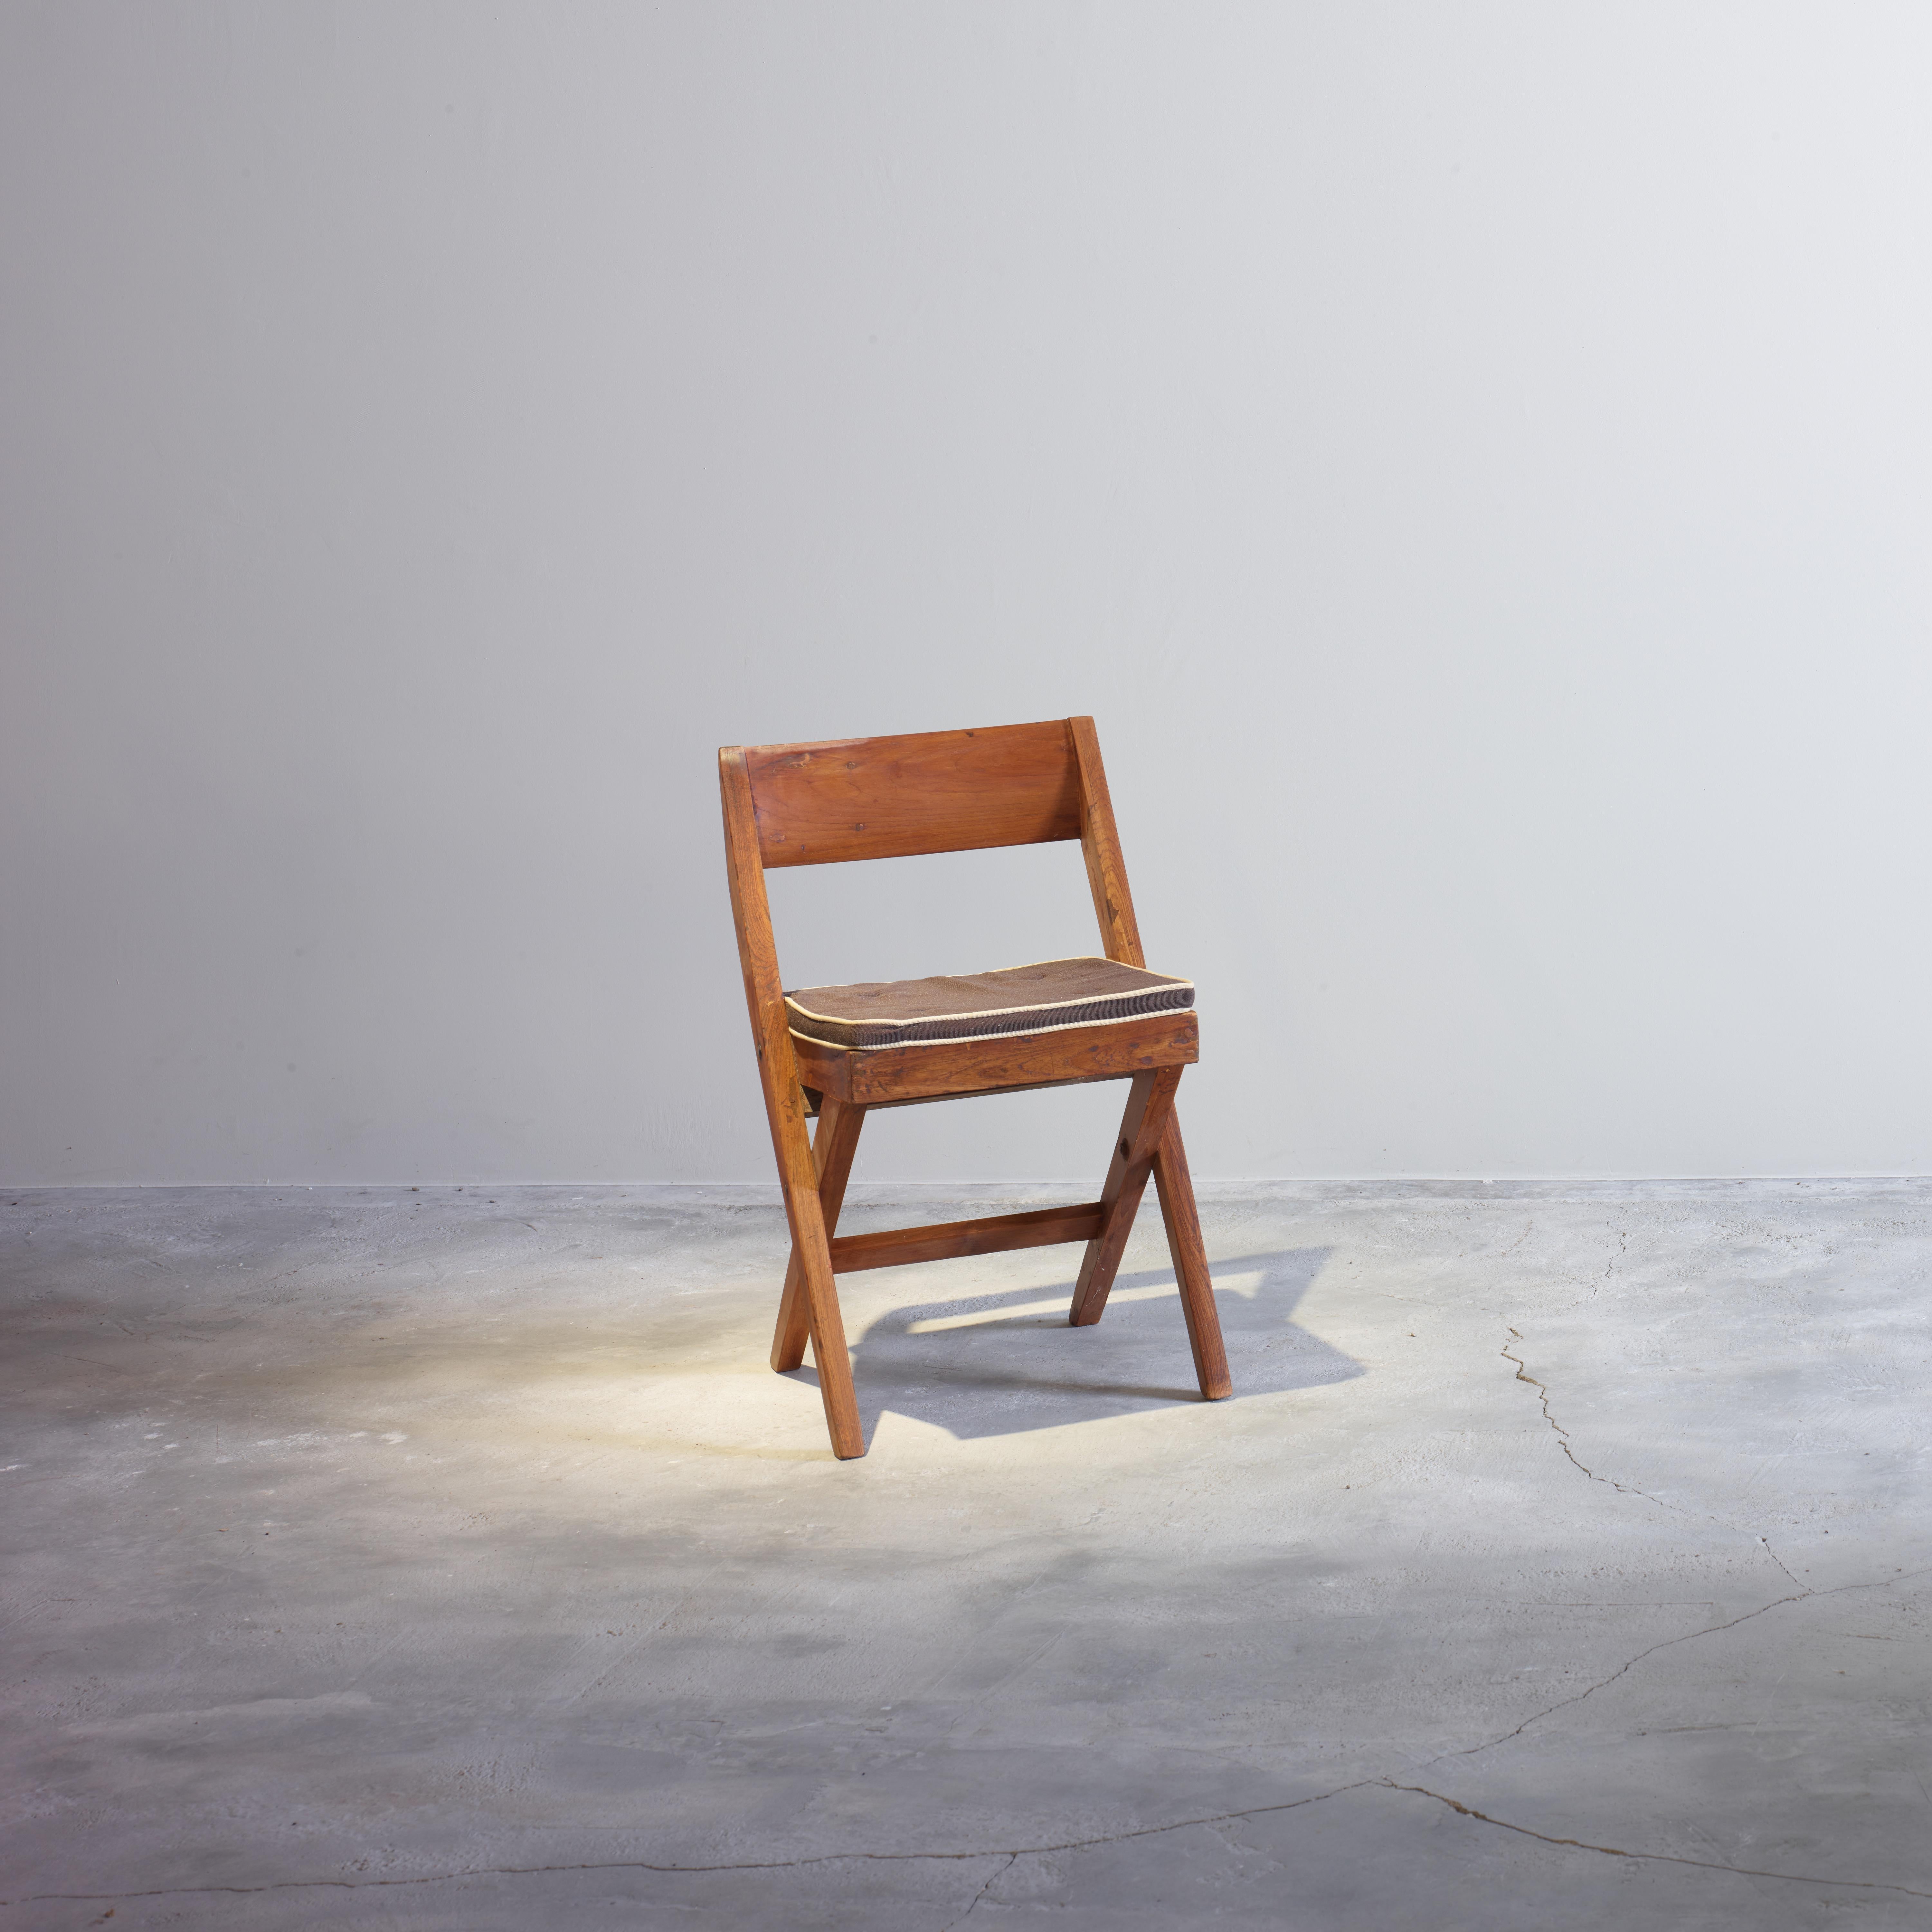 Cet ensemble de chaises n'est pas seulement une pièce fantastique, c'est aussi une icône du design. Elle ressemble à une chaise pliante mais finalement on ne peut pas la plier. La forme est très claire, tout est droit, seul le siège arrière est